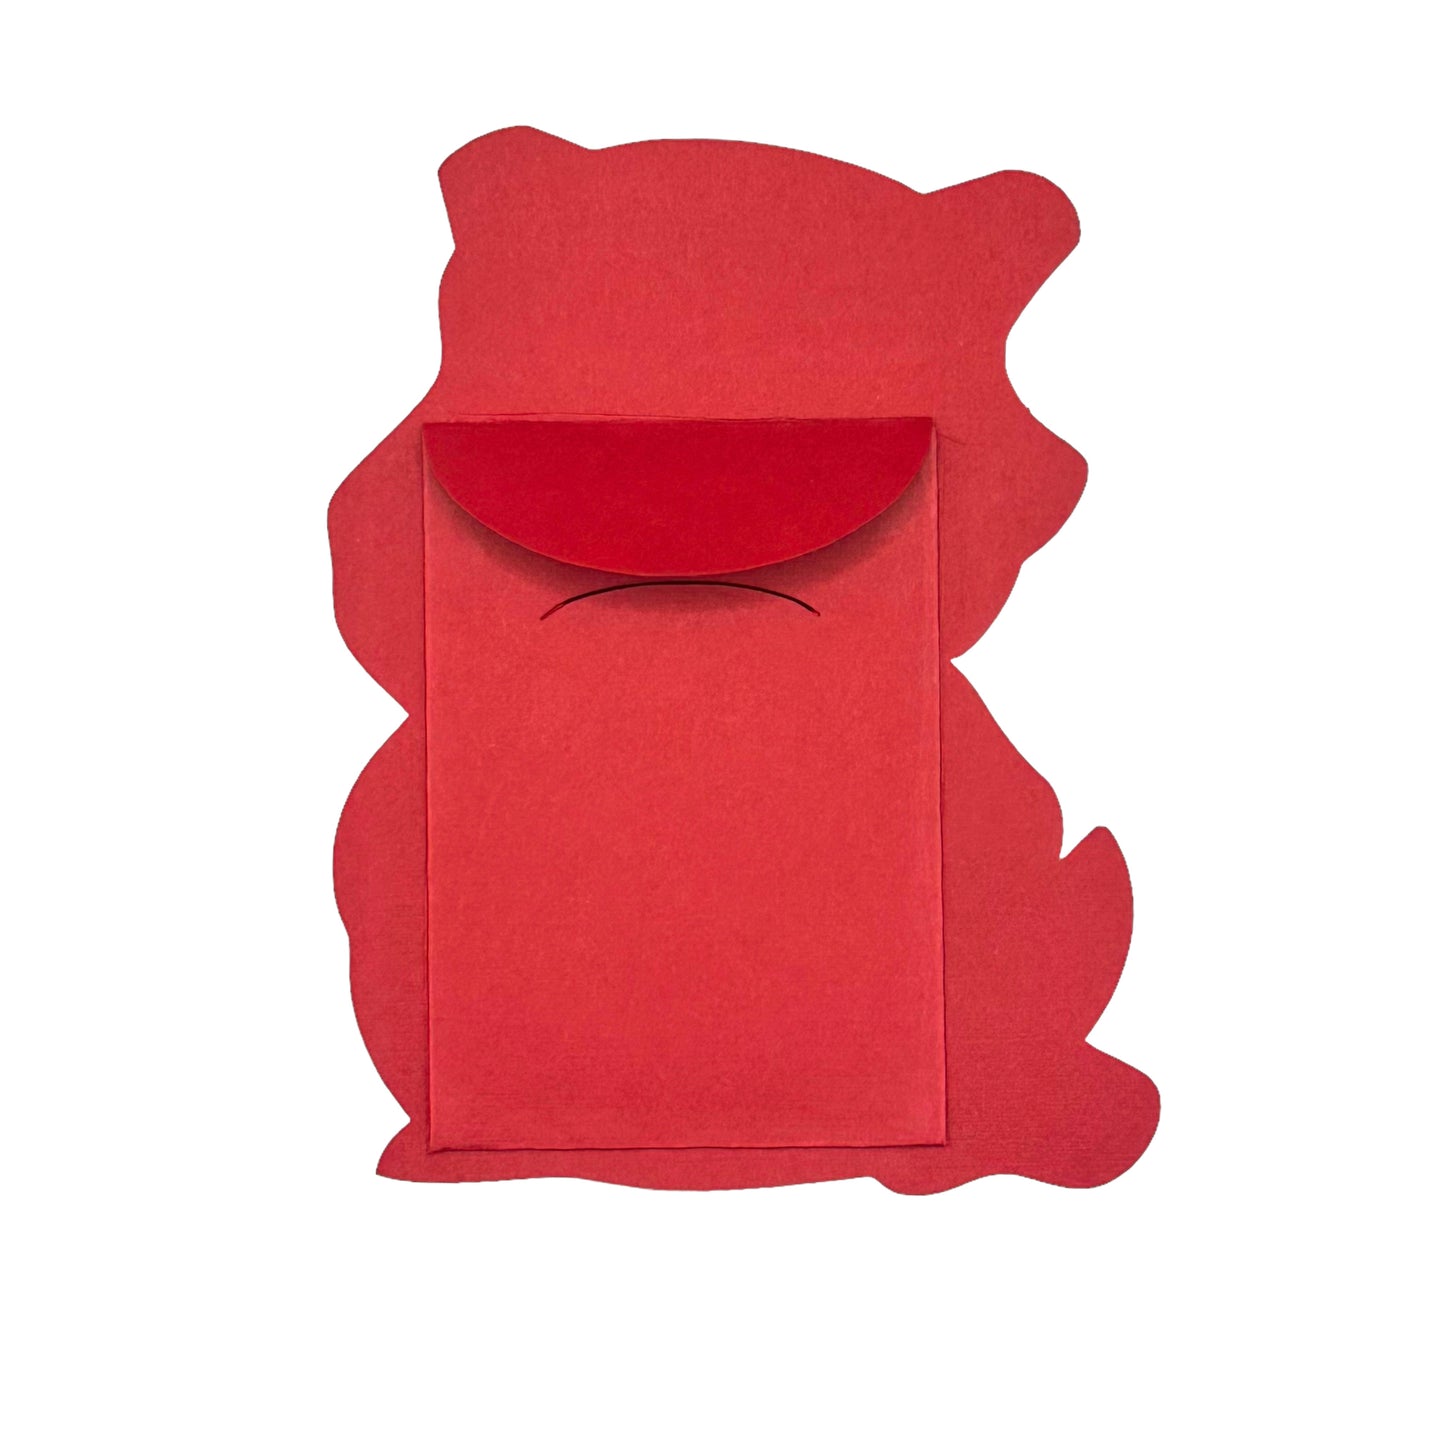 Chunkemon Cubone Red Envelope